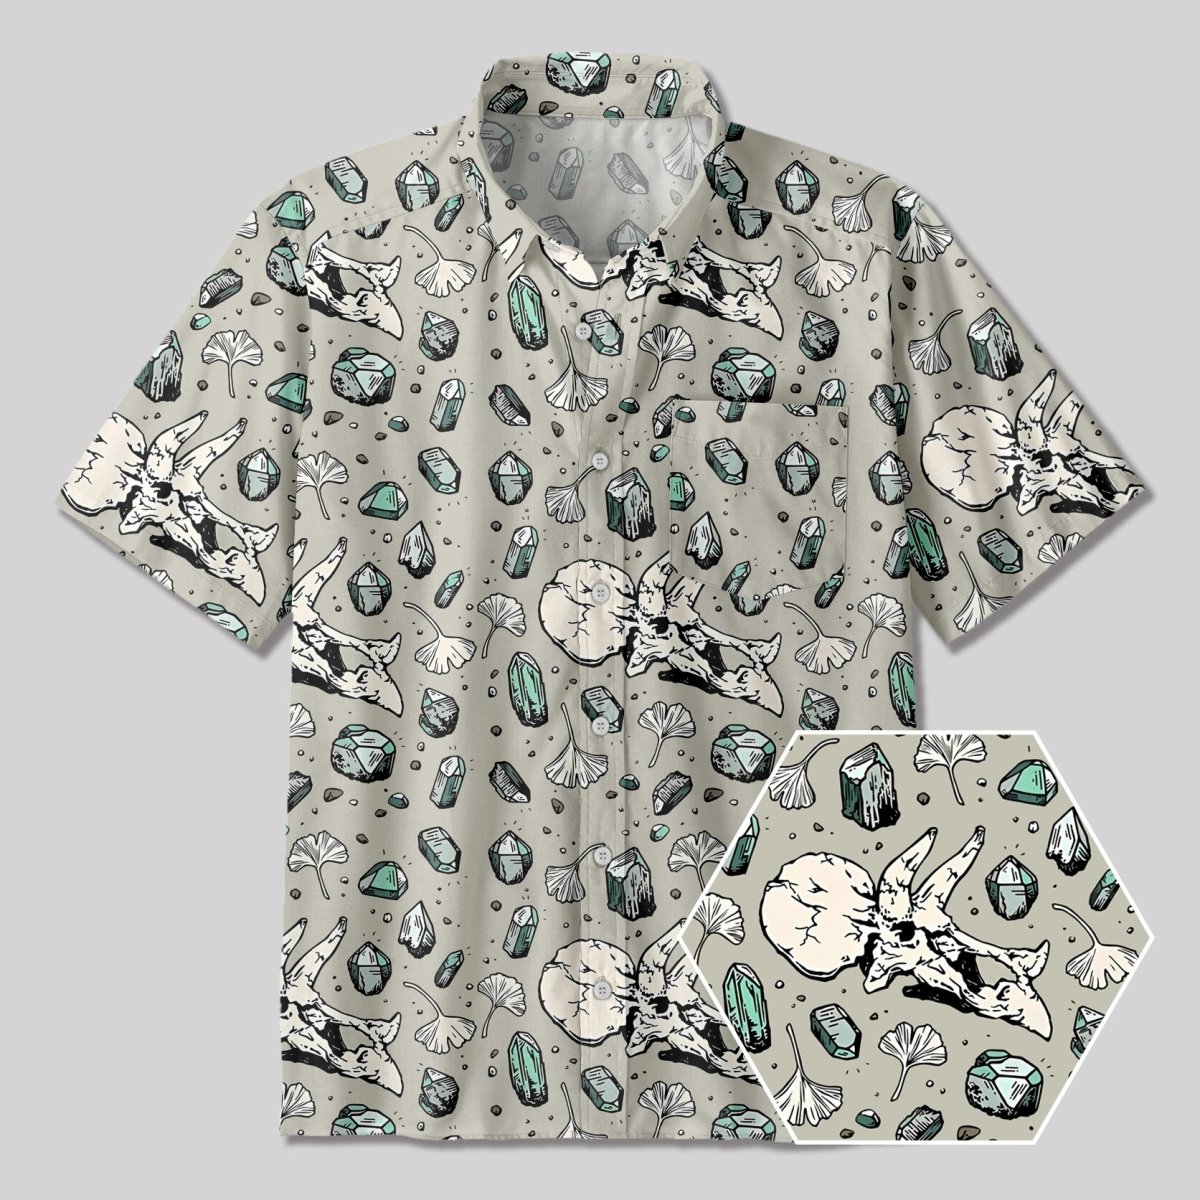 Ancient Dinosaur Fossils Button Up Pocket Shirt - Geeksoutfit